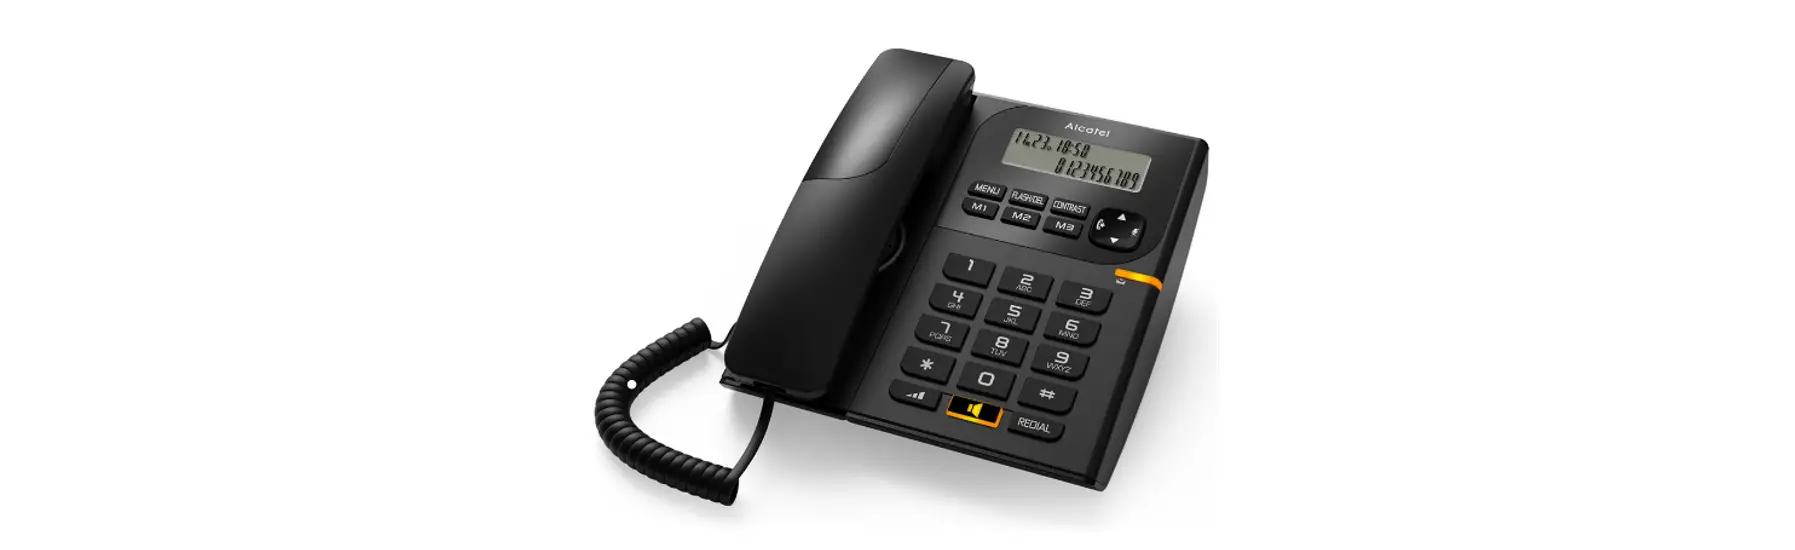 Tmax 10 Wired Landline Phone